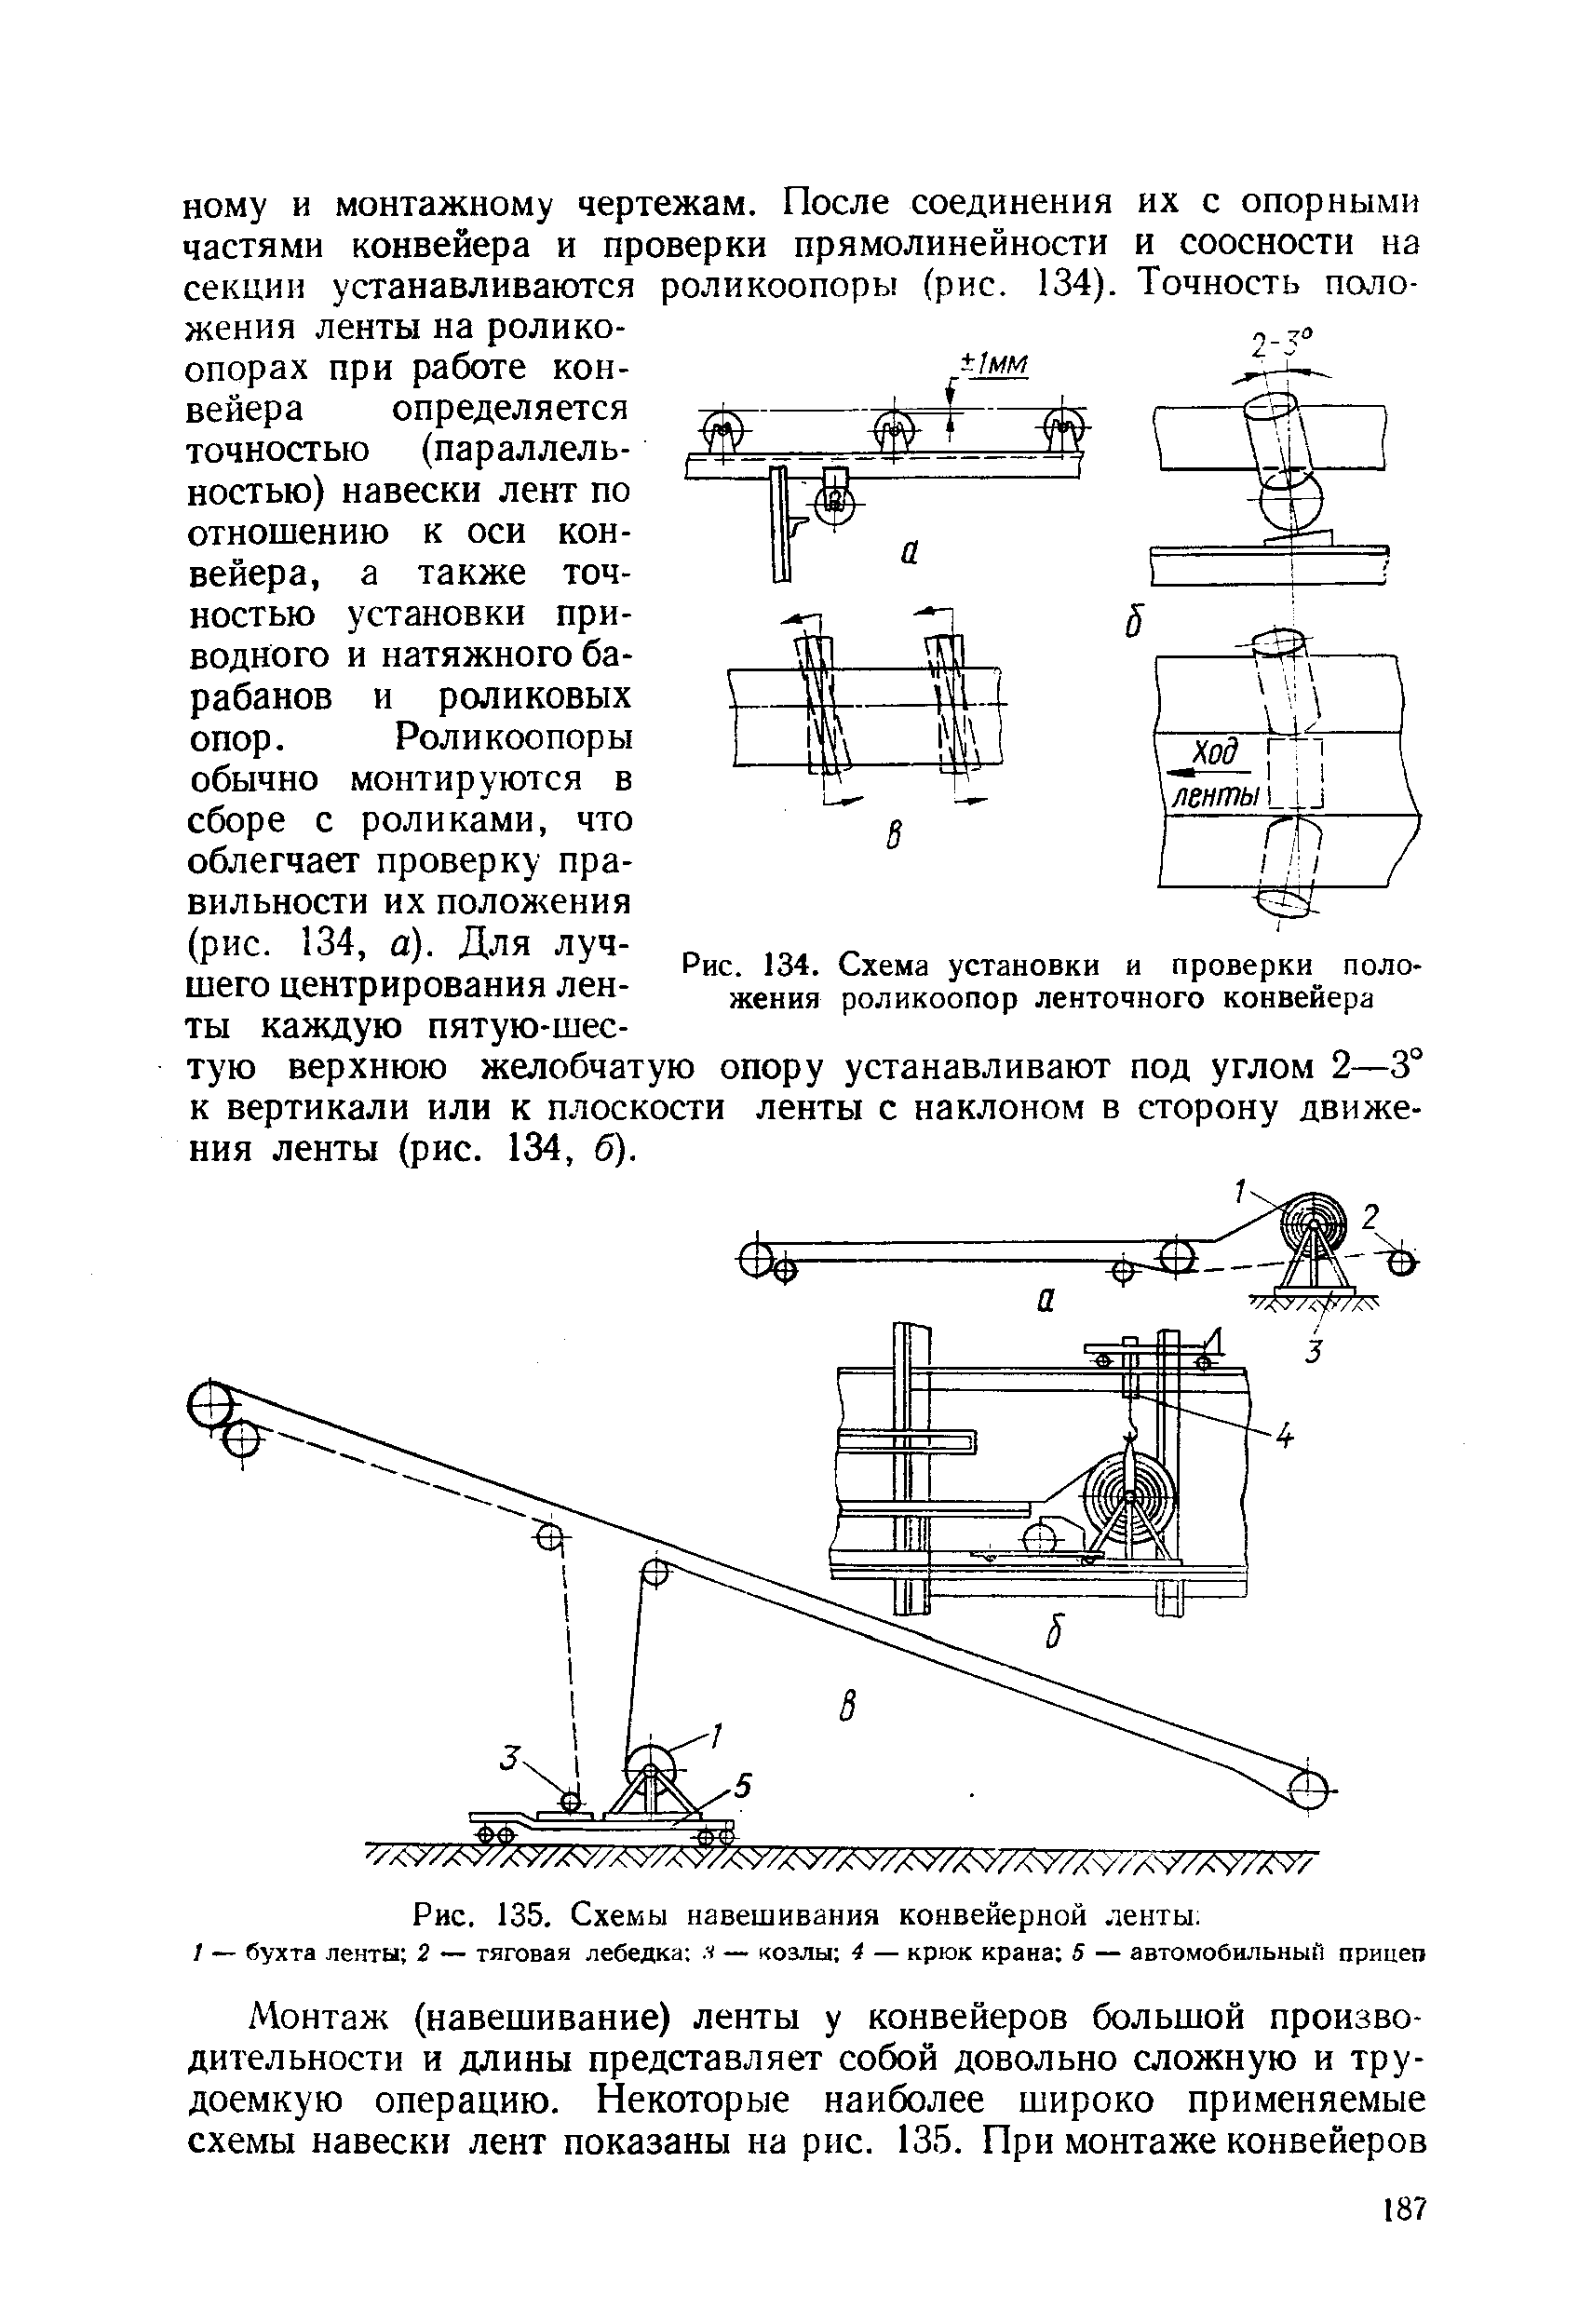 Рис. 134. Схема установки и проверки положения роликоопор ленточного конвейера
